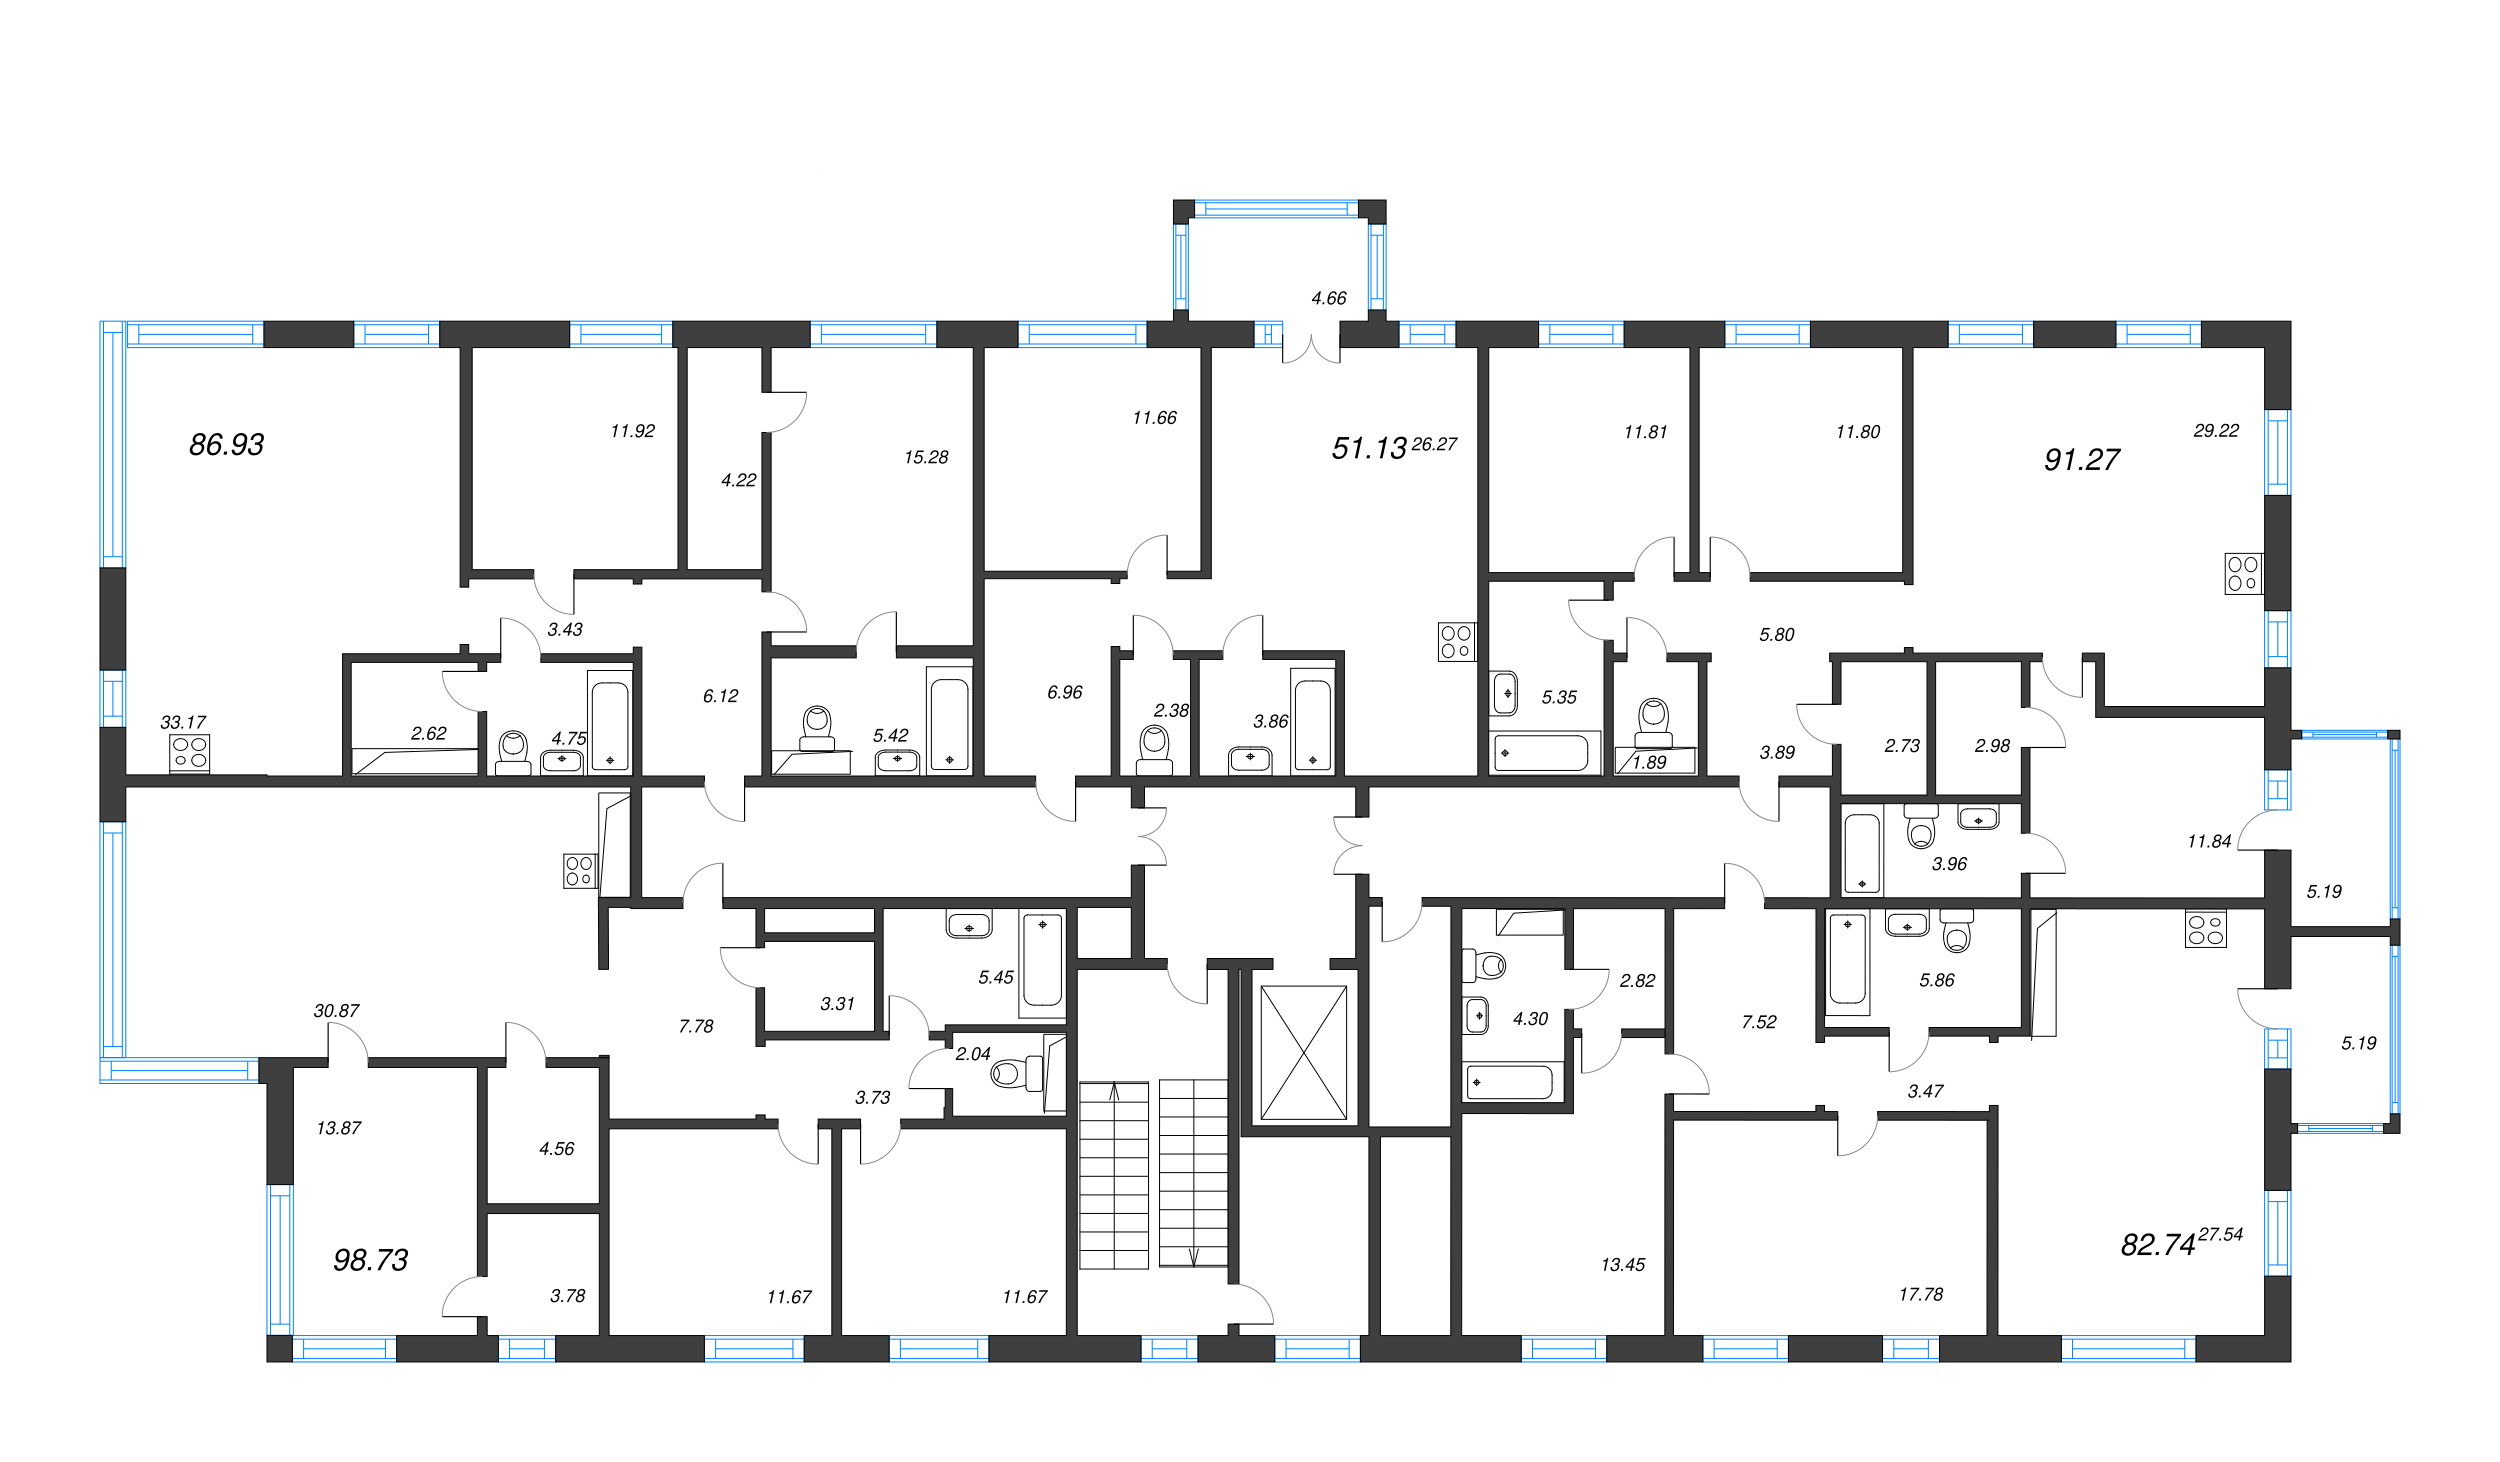 4-комнатная (Евро) квартира, 91.27 м² в ЖК "Черная речка, 41" - планировка этажа